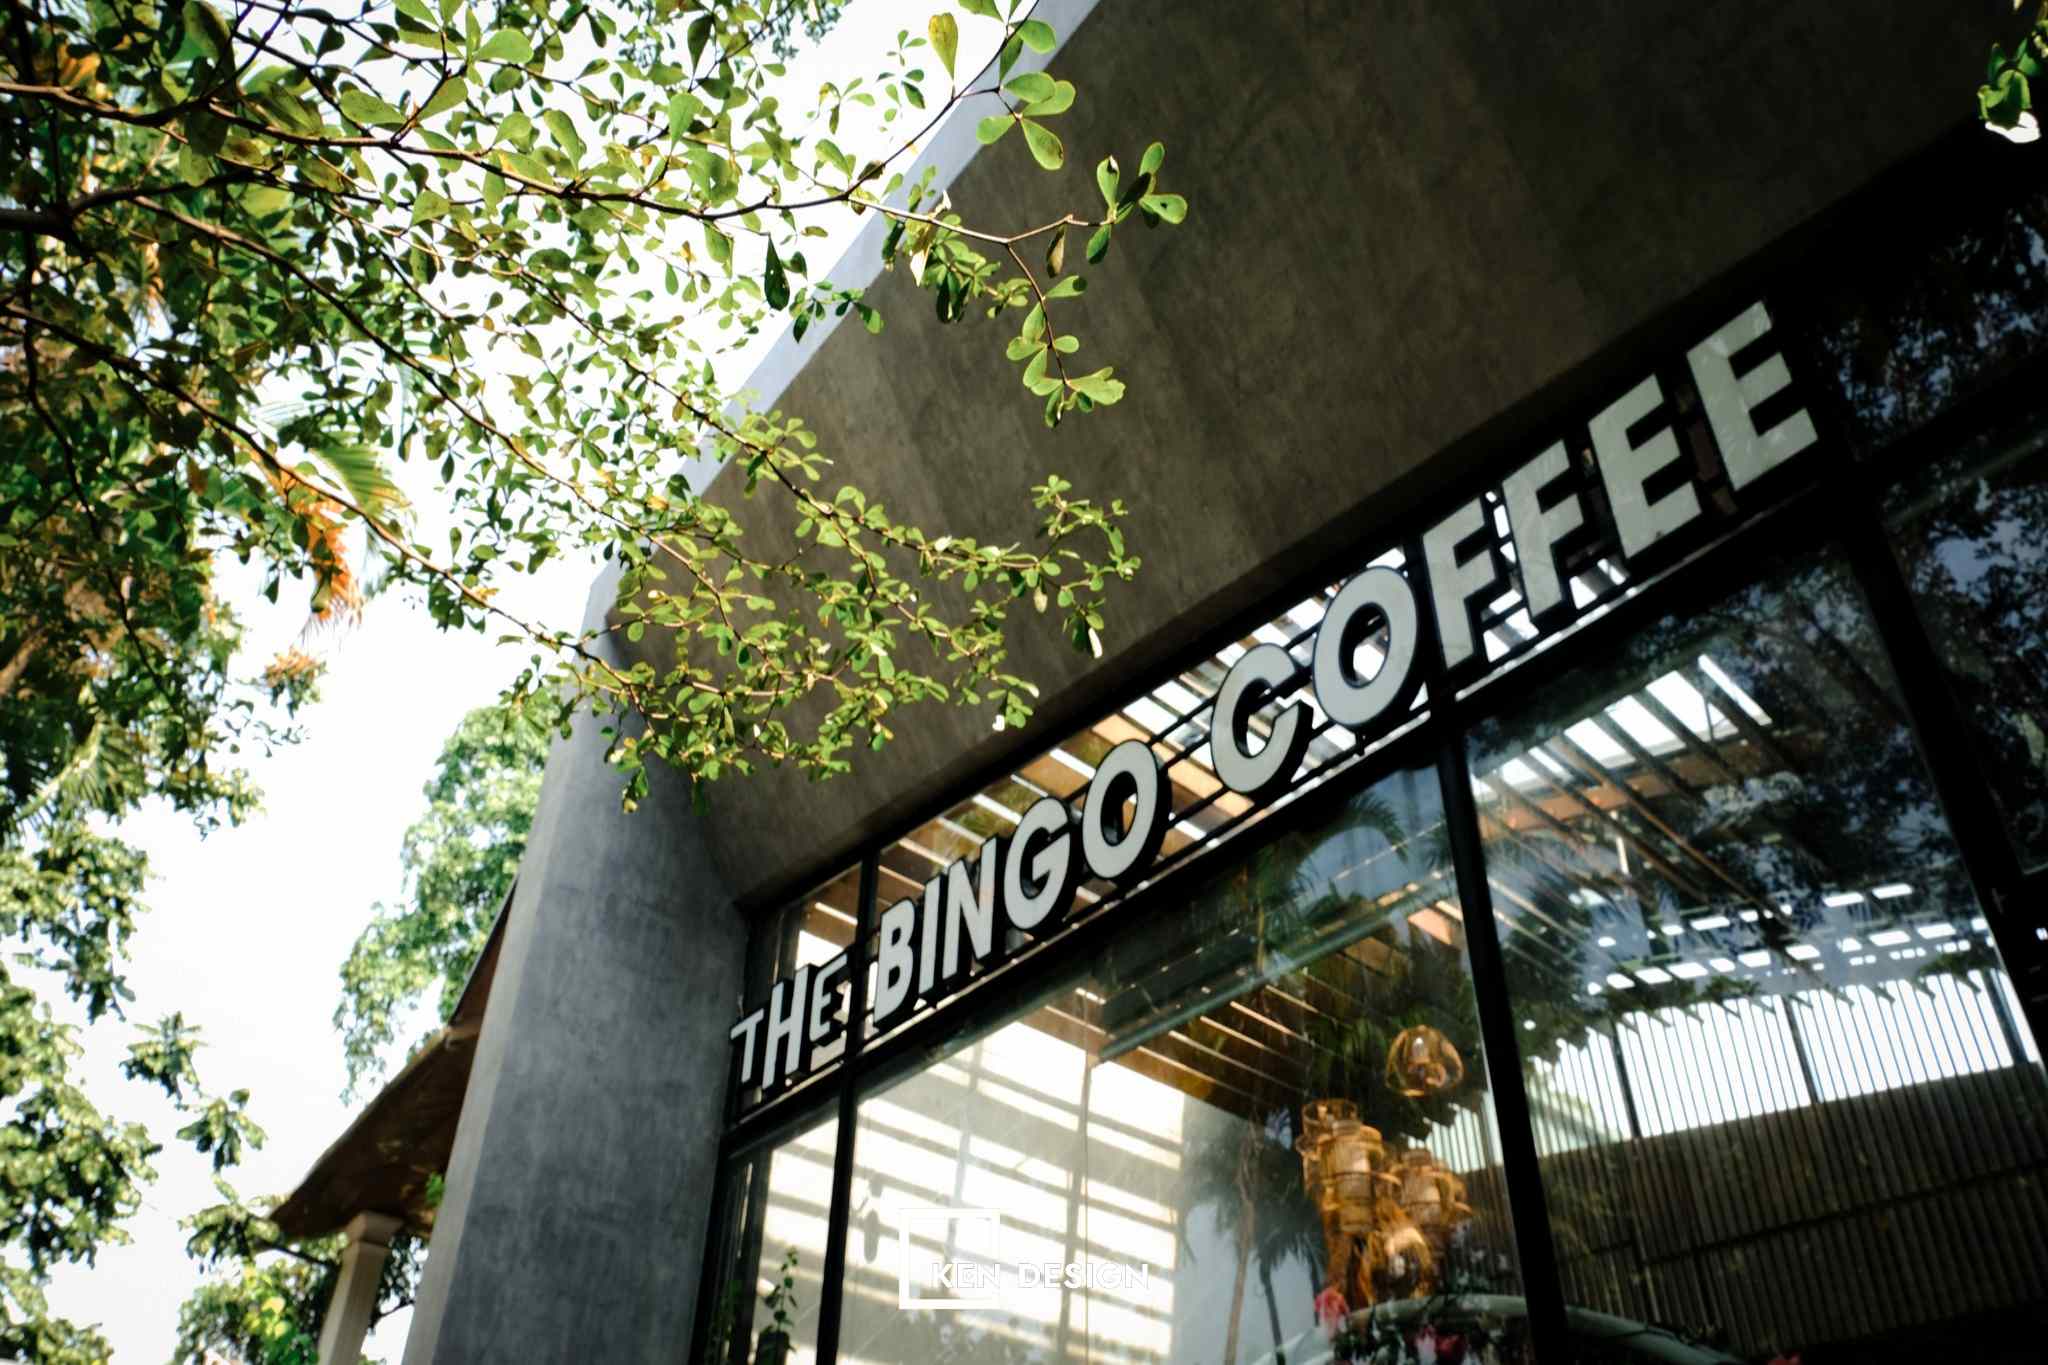 thiết kế the bingo coffee nổi bật với dòng chữ trắng